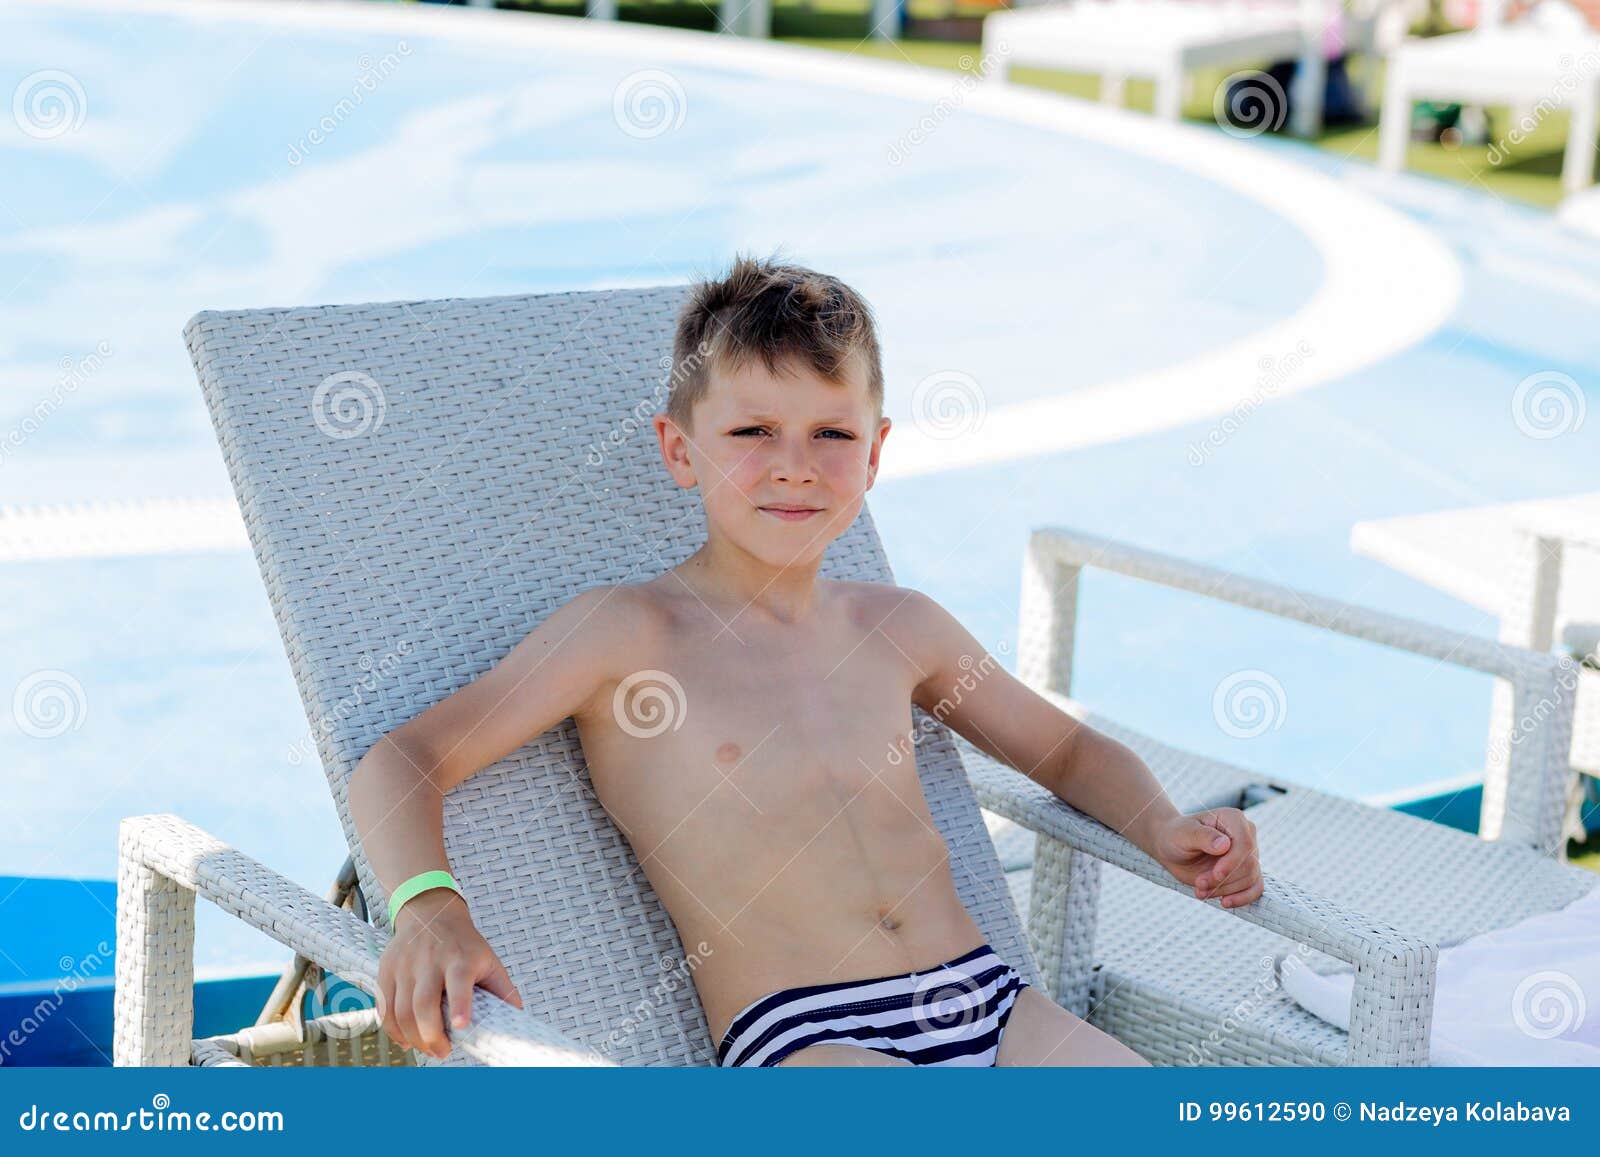 Gezichtsvermogen Voorzichtigheid Fabel Jonge Jongen in Een Zwempak Op Een Plank Door De Pool Stock Foto - Image of  manier, cirkel: 99612590